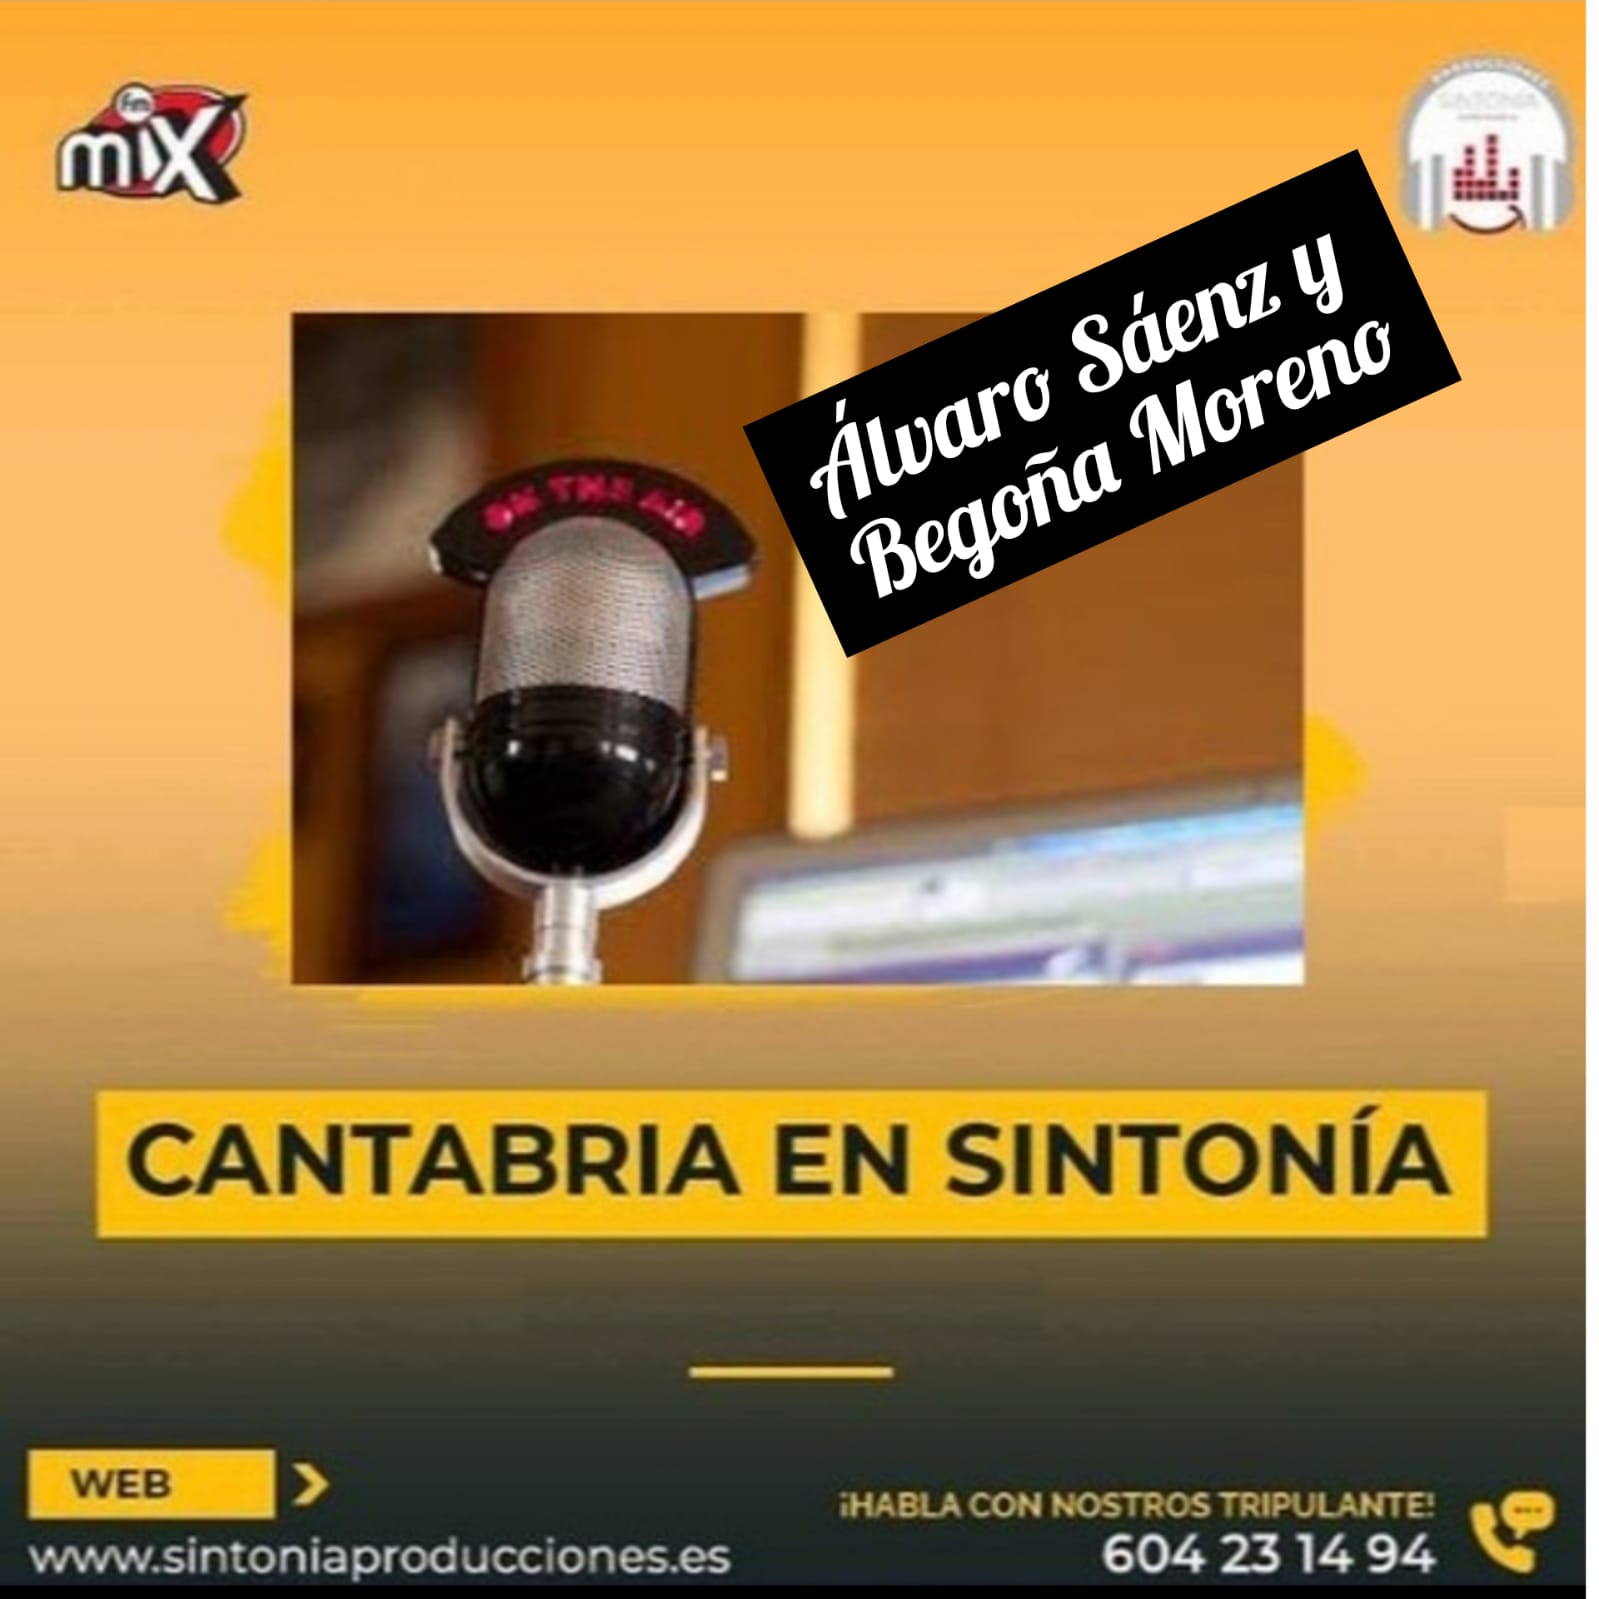 Cantabria en Sintonía en Mix FM. Viernes 08-04-2022